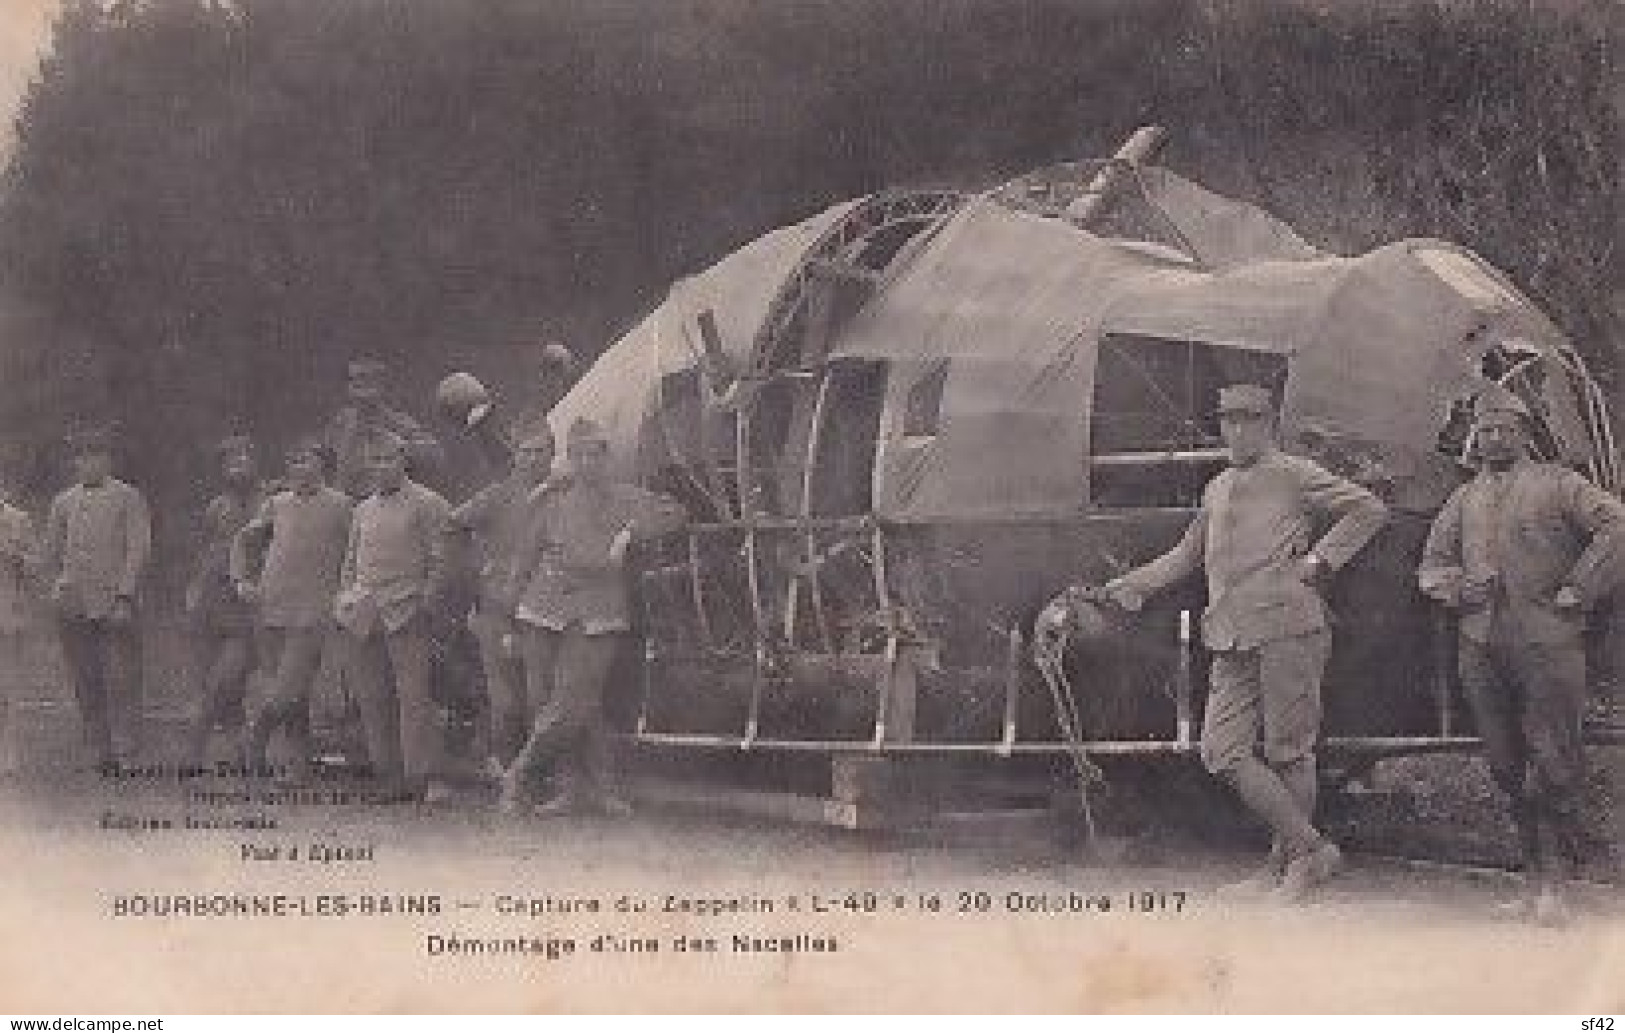 BOURBONNE LES BAINS         CAPTURE DU ZEPPELIN  L 49  LE 20 10 1917    DEMONTAGE D UNE NACELLE - War 1914-18